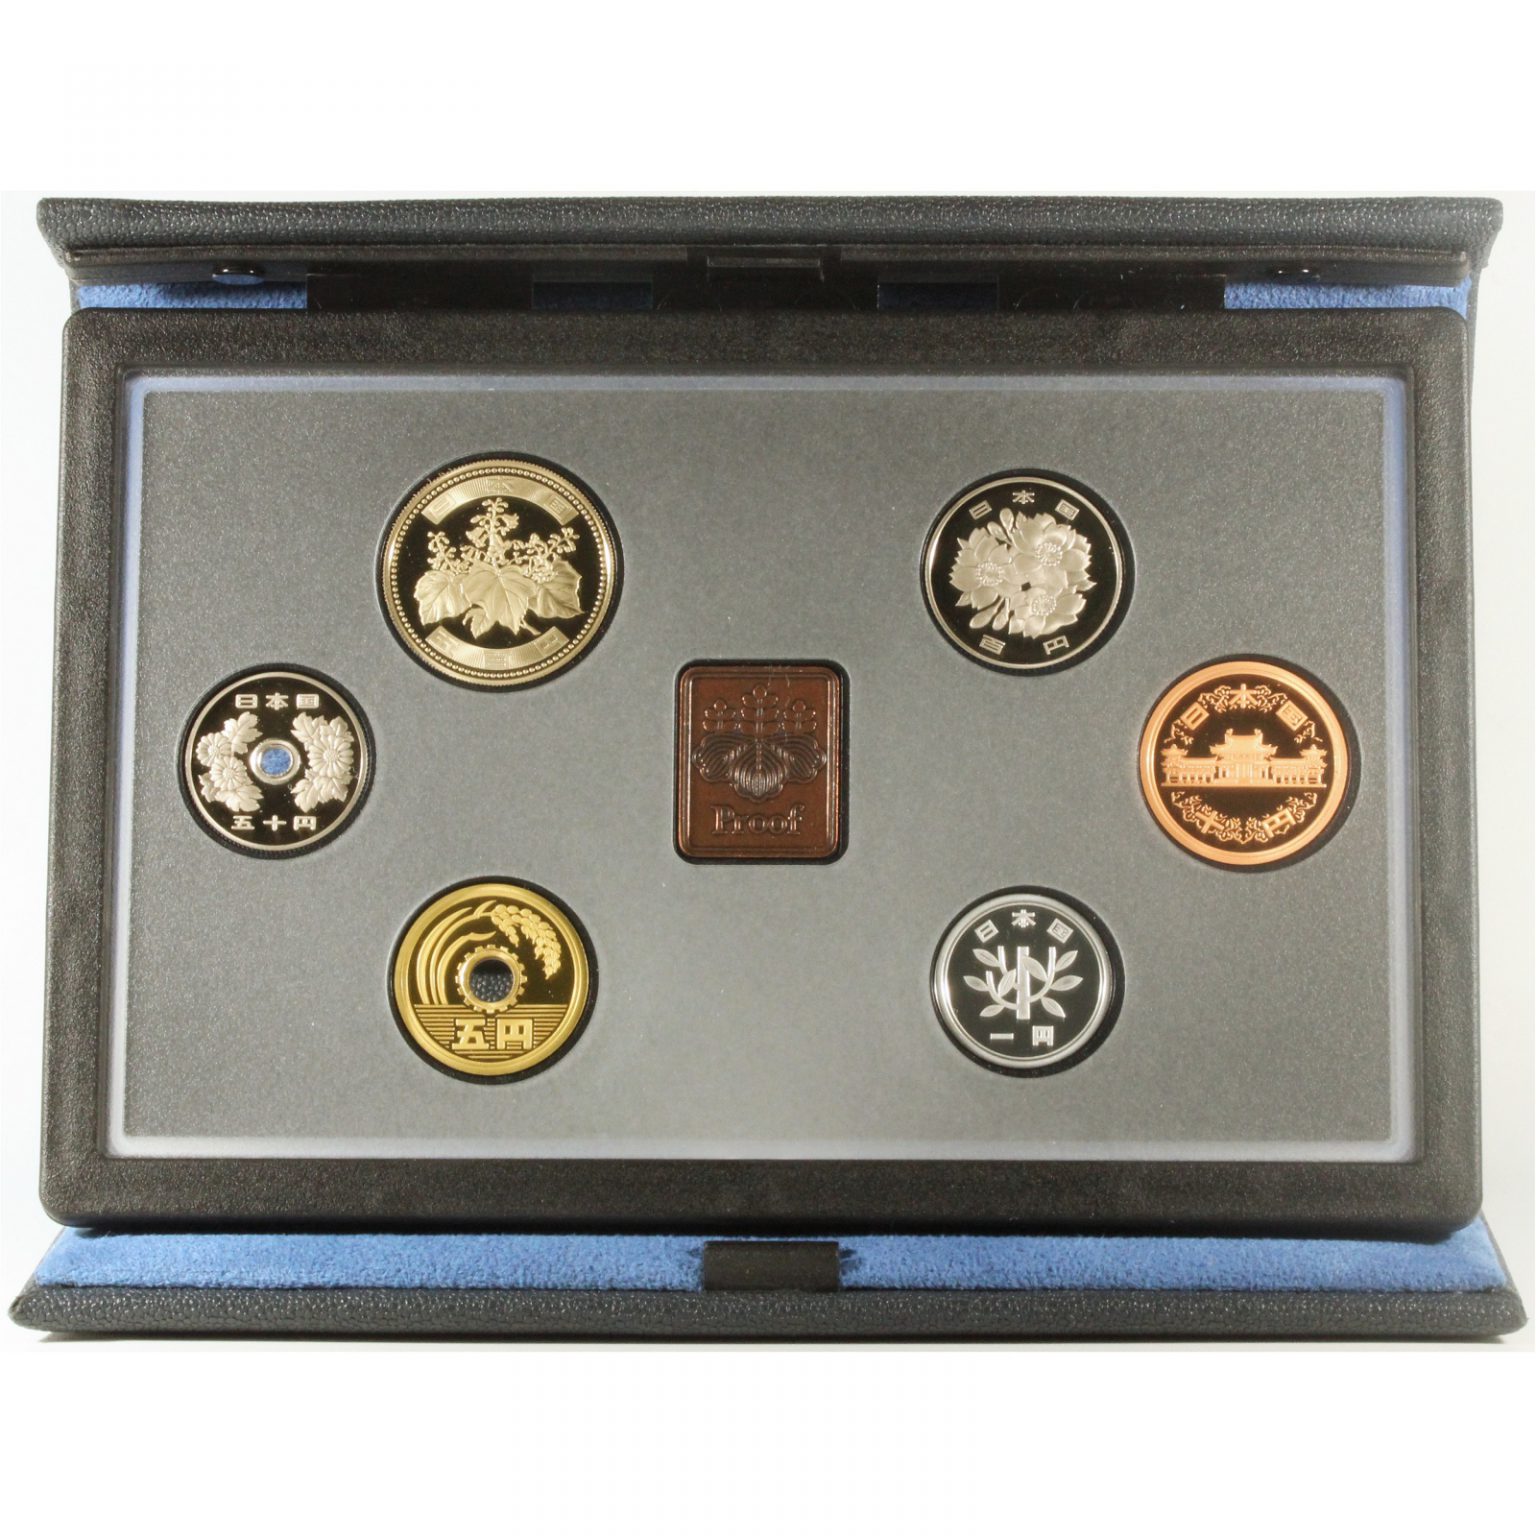 プルーフ貨幣セット 2002年 平成14年 年銘板あり ミントセット コインセット 財務省 造幣局 古銭 コイン